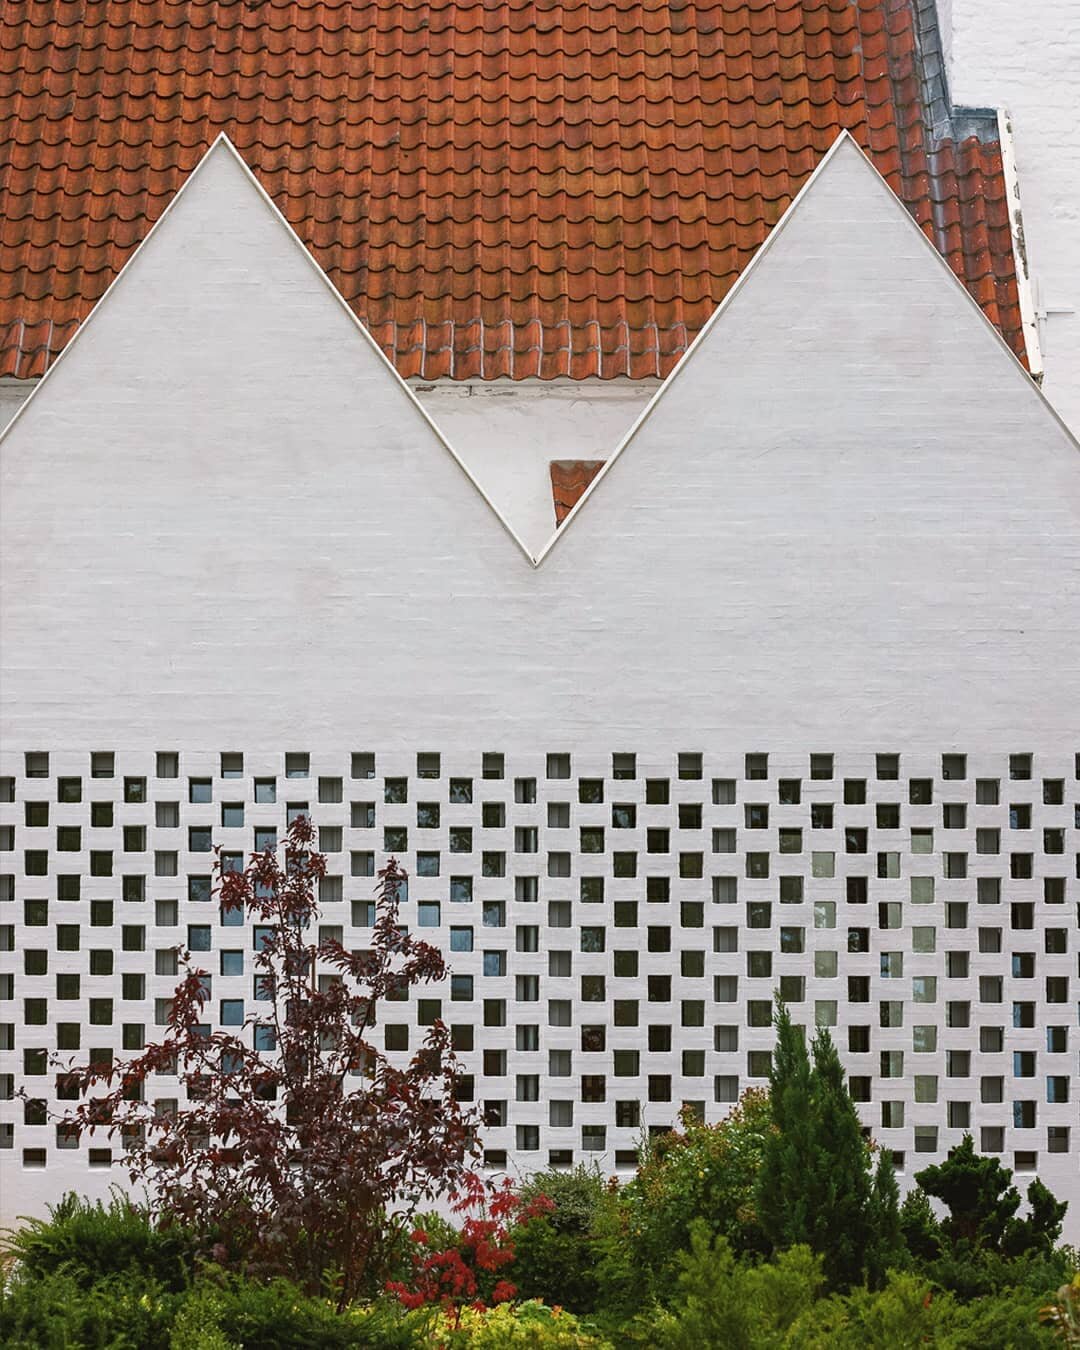 Brickwork
Sacristy in Tilst, Denmark / 2020
Photo: @torbeneskerod 

#tuliniuslind #danisharchitecture #brickwork #tilst #danskarkitektur